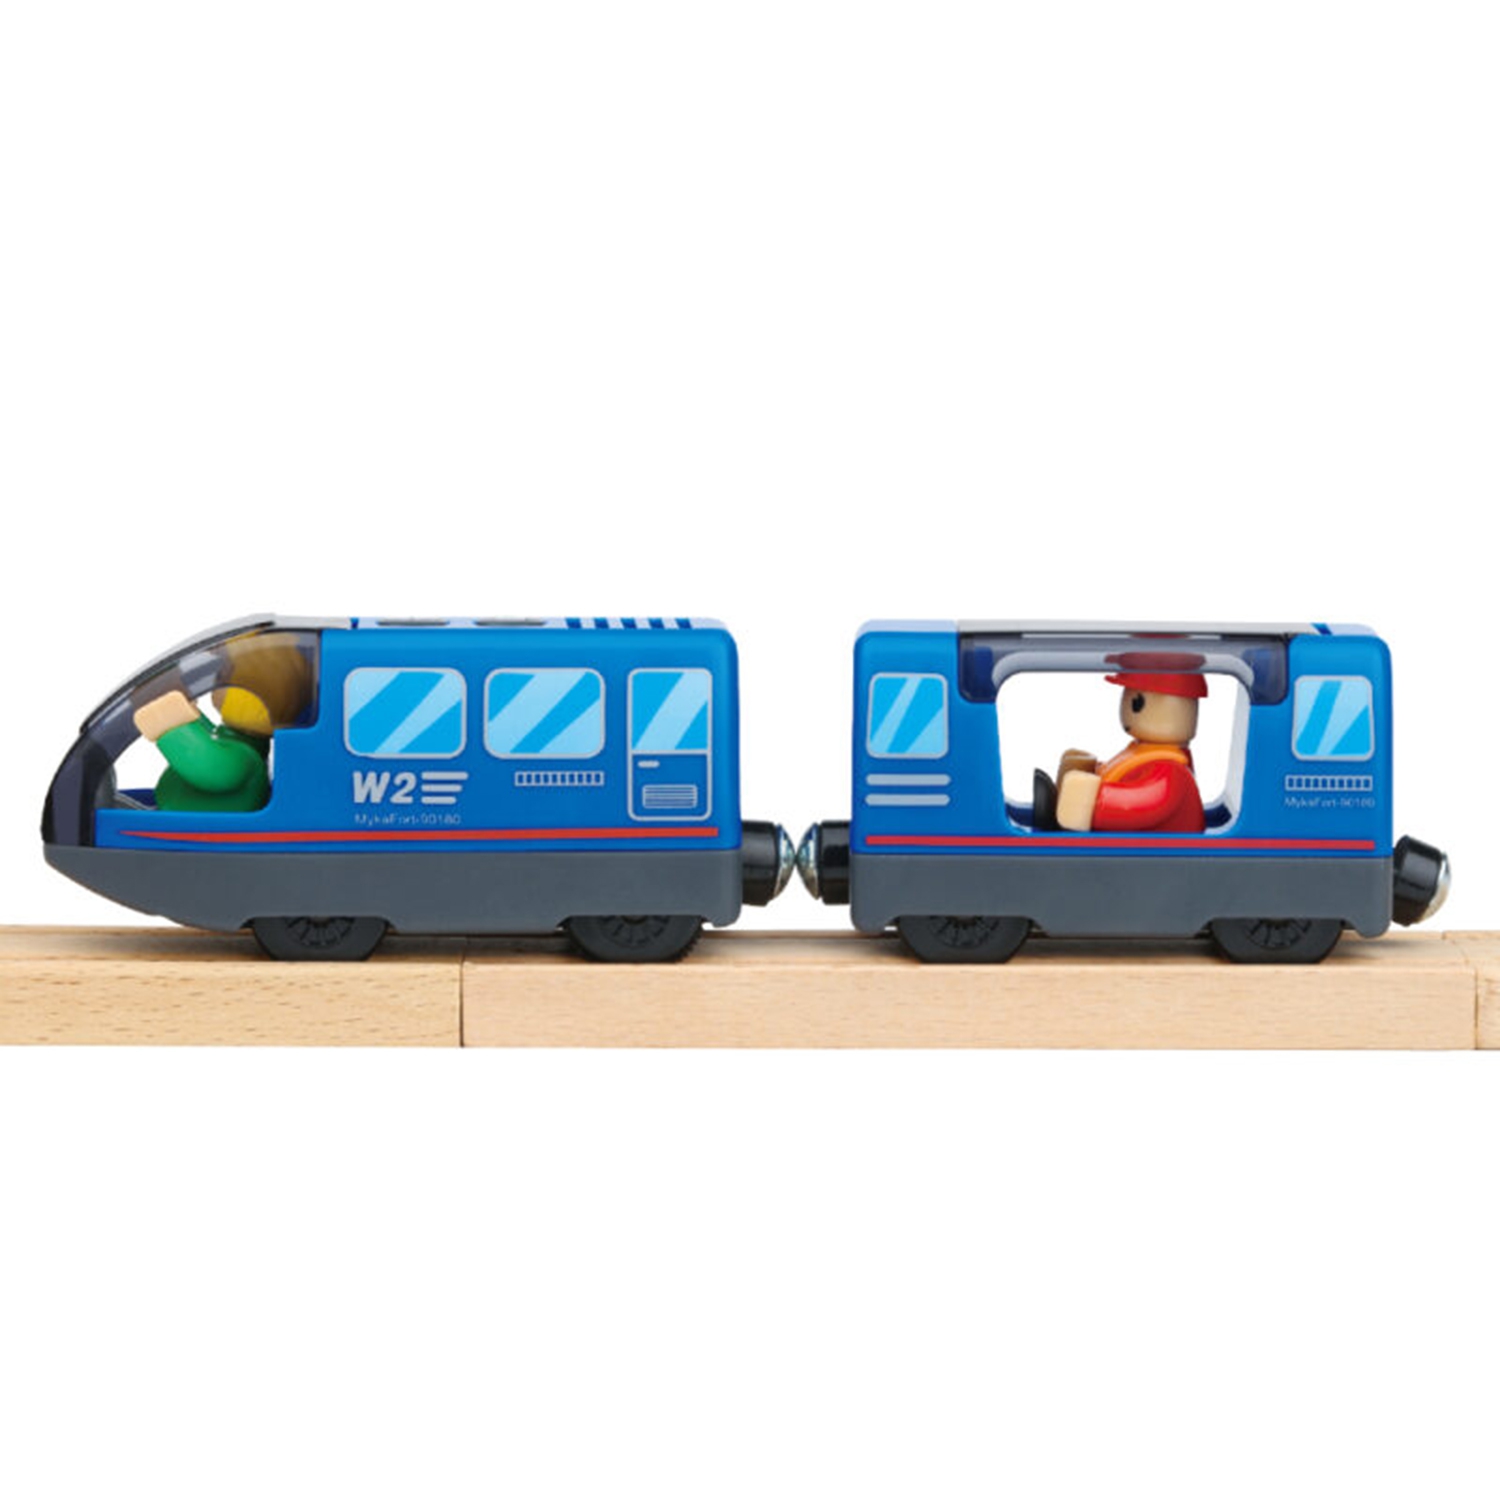 Drewniana kolejka staż pożarna ambulans 70 el., zabawka dla dzieci, Tooky Toy